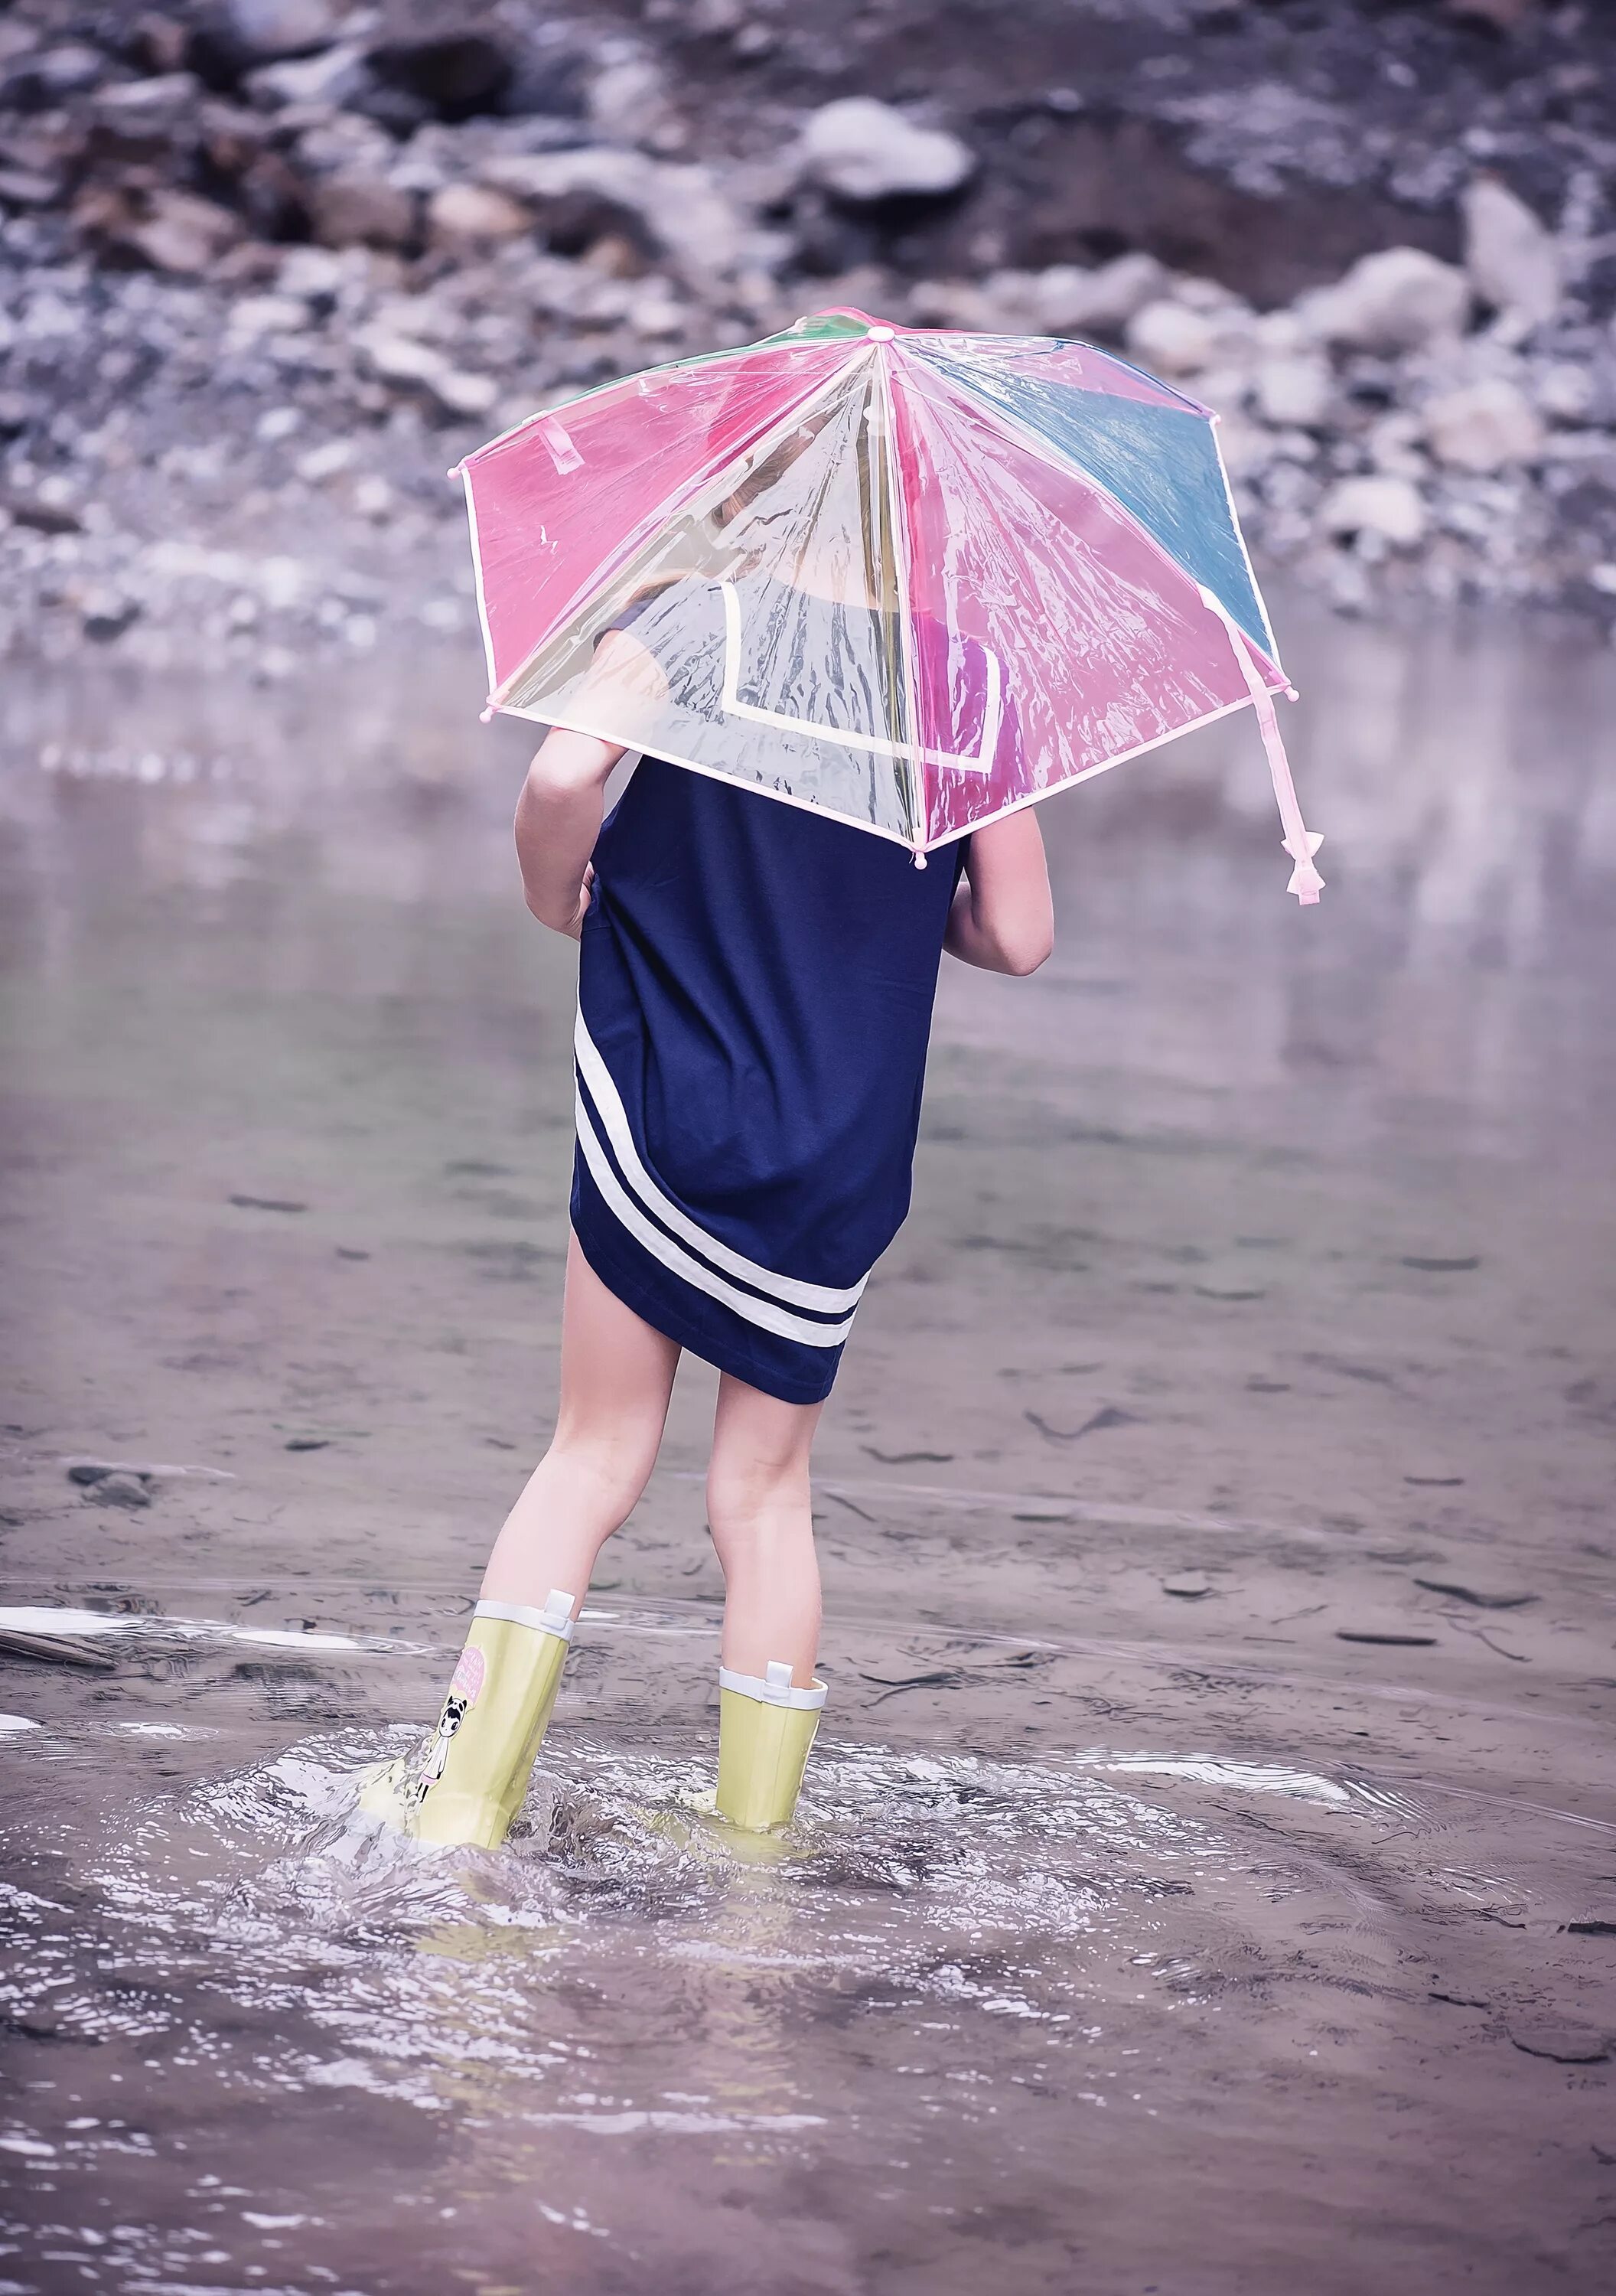 Мам дождь пошел. Девочка под дождем. Девочка с зонтиком. Зонт под дождем. Девочка под зонтиком.